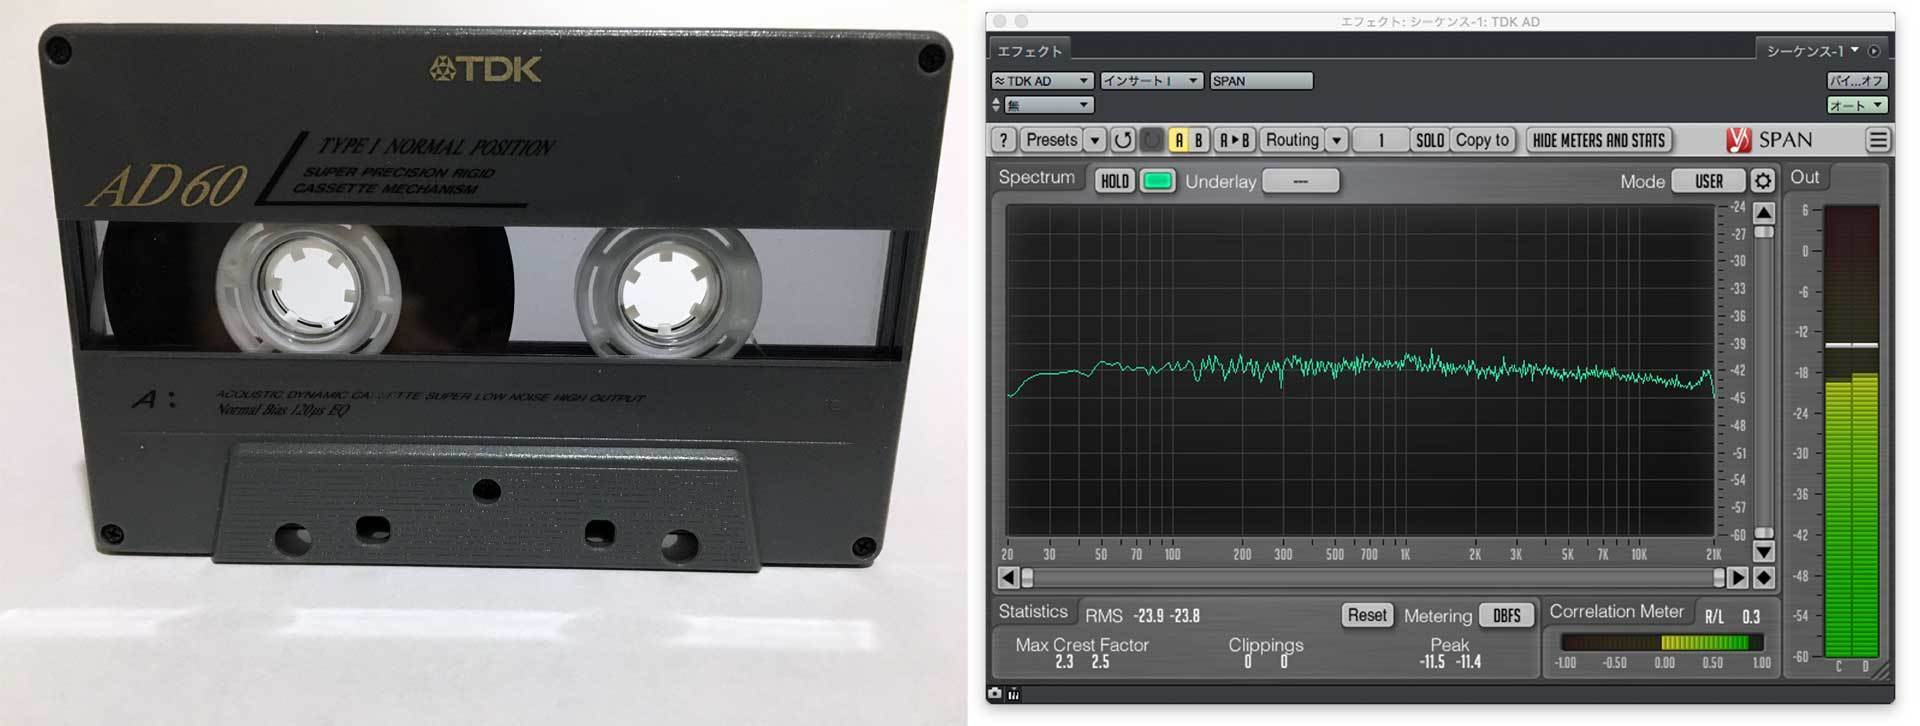 【新品】TDK AD-X54 カセットテープ 39本 まとめ売り 平成レトロTDK